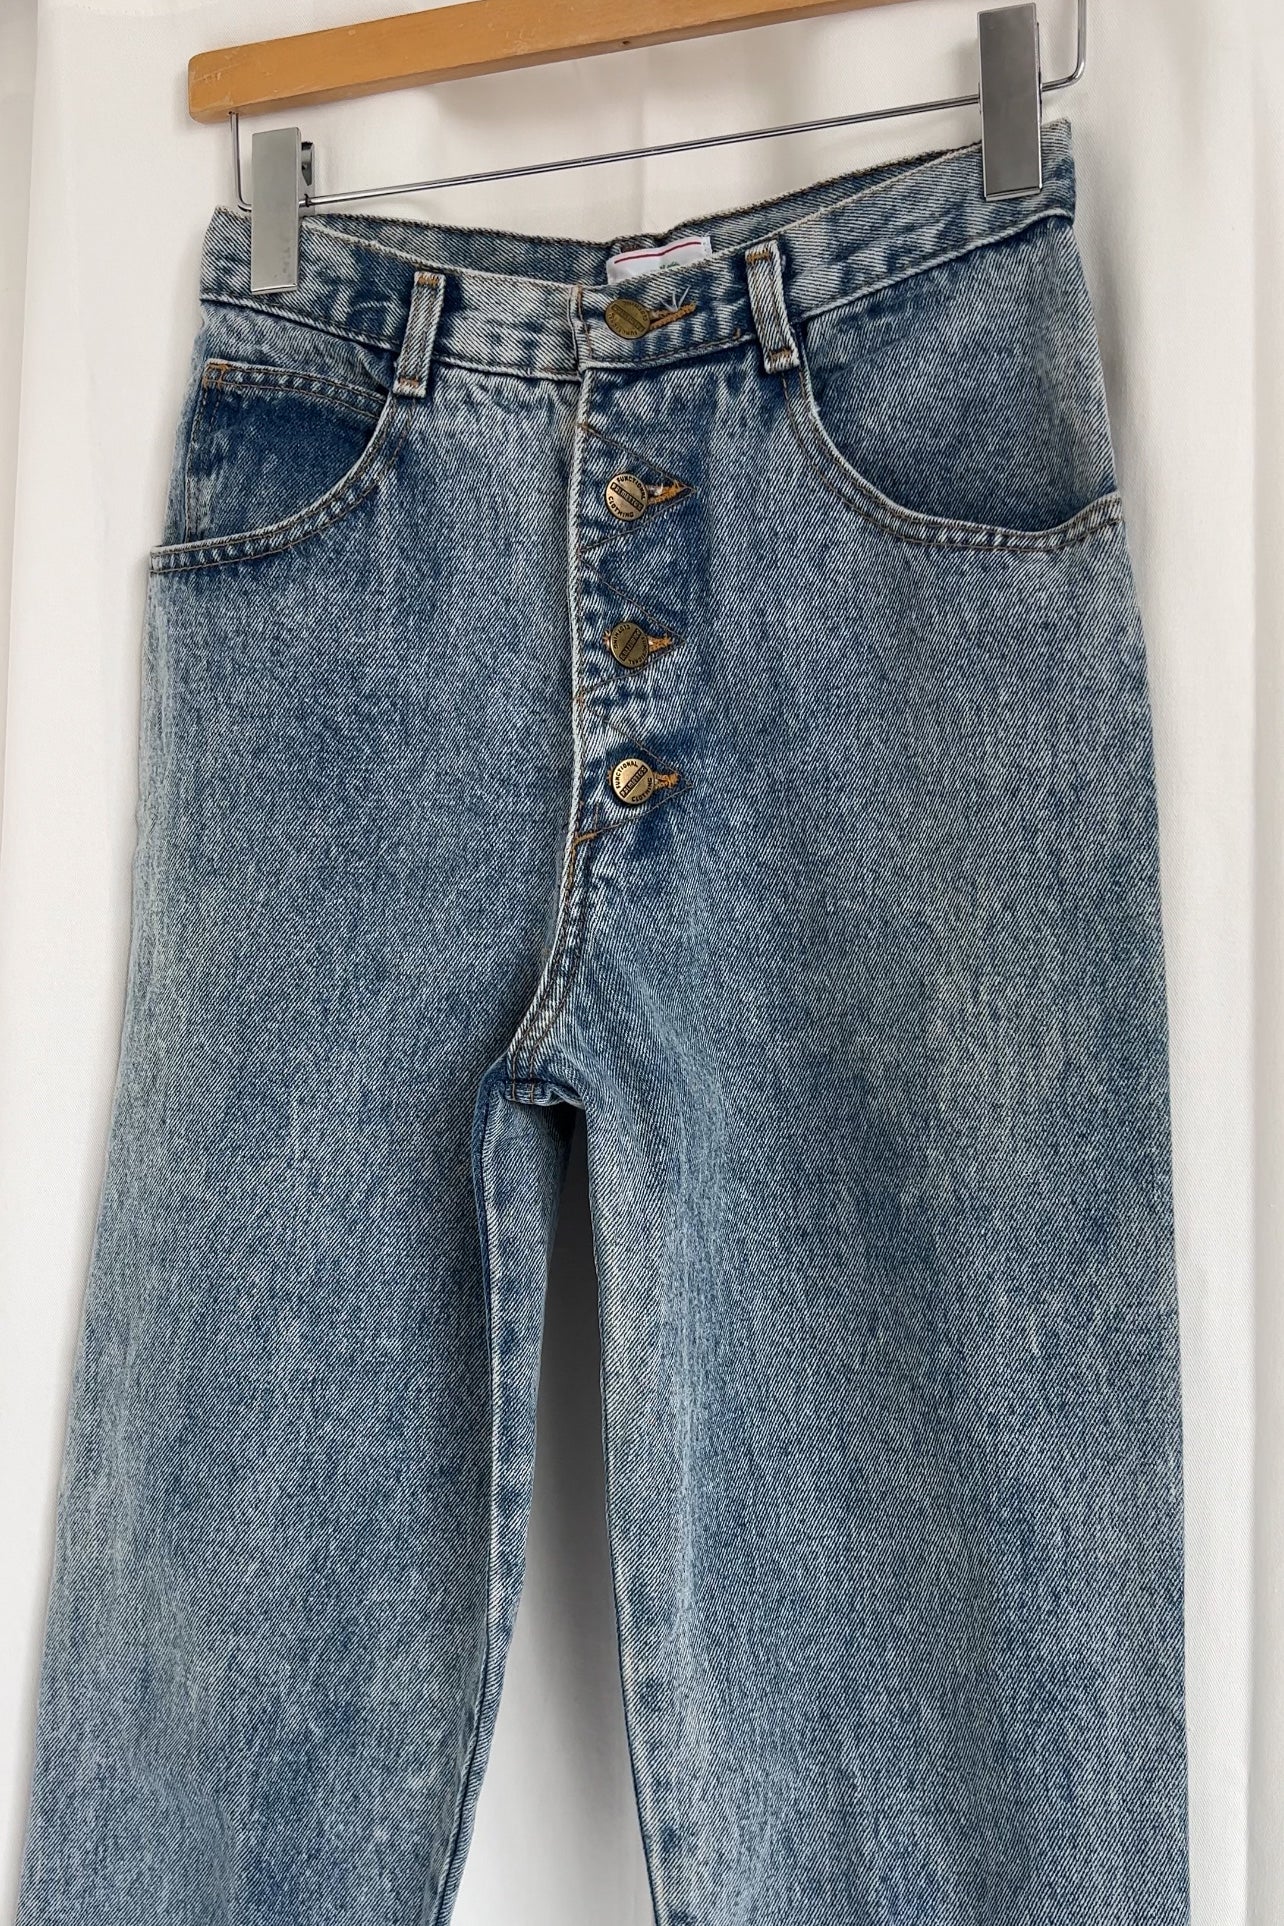 Vintage Acid Wash Denim High Waisted Jeans